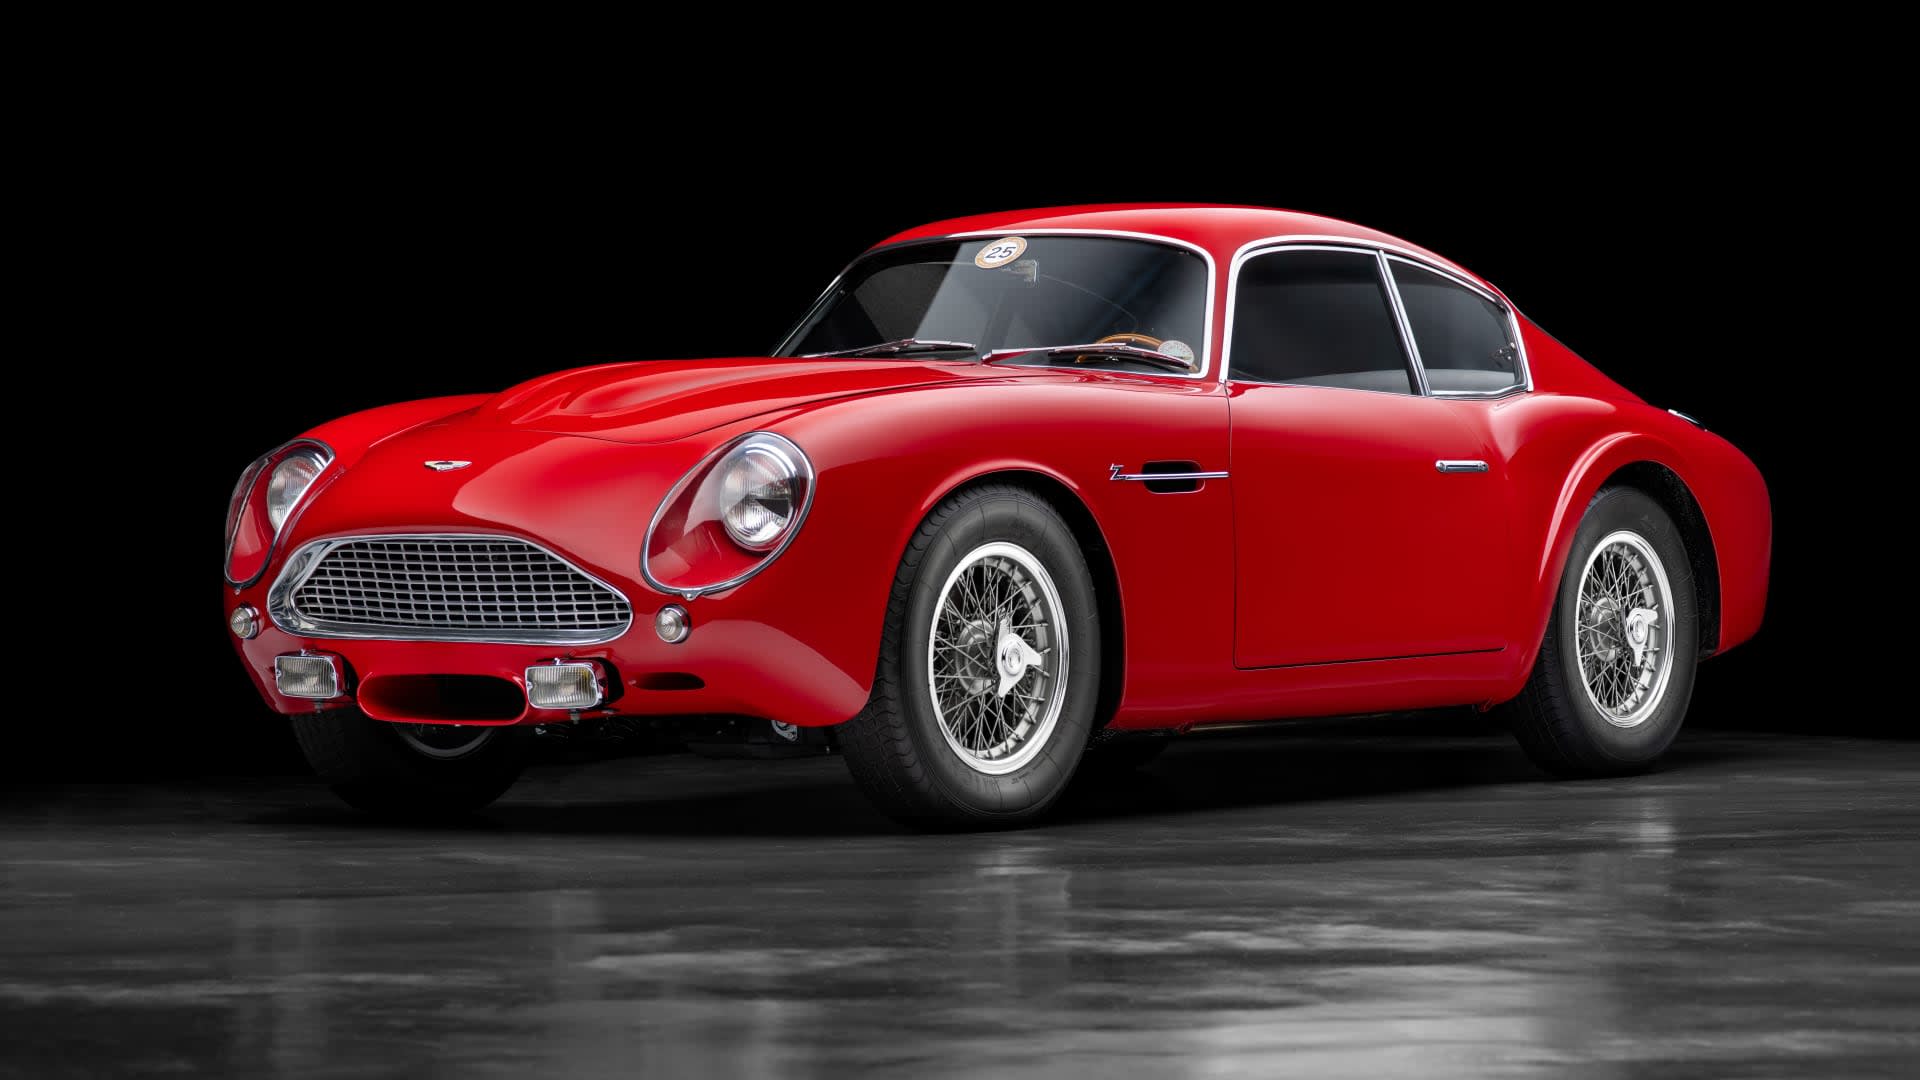 Τα πιο σπάνια και ακριβά αυτοκίνητα στον κόσμο: Aston Martin DB4 GT Zagato του 1962